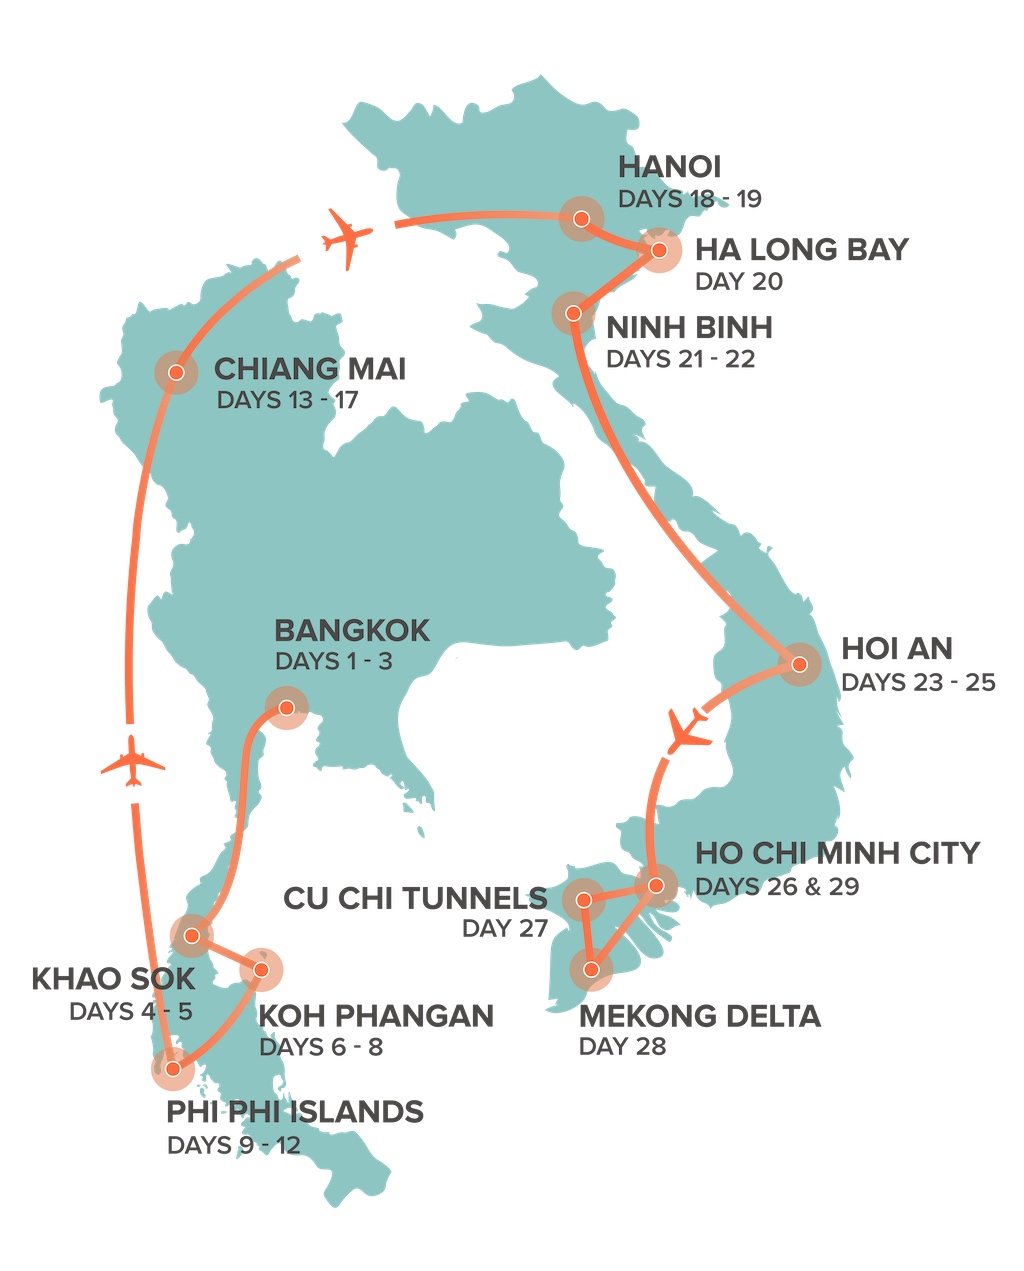 Thailand en Vietnam jongerenreis routemap